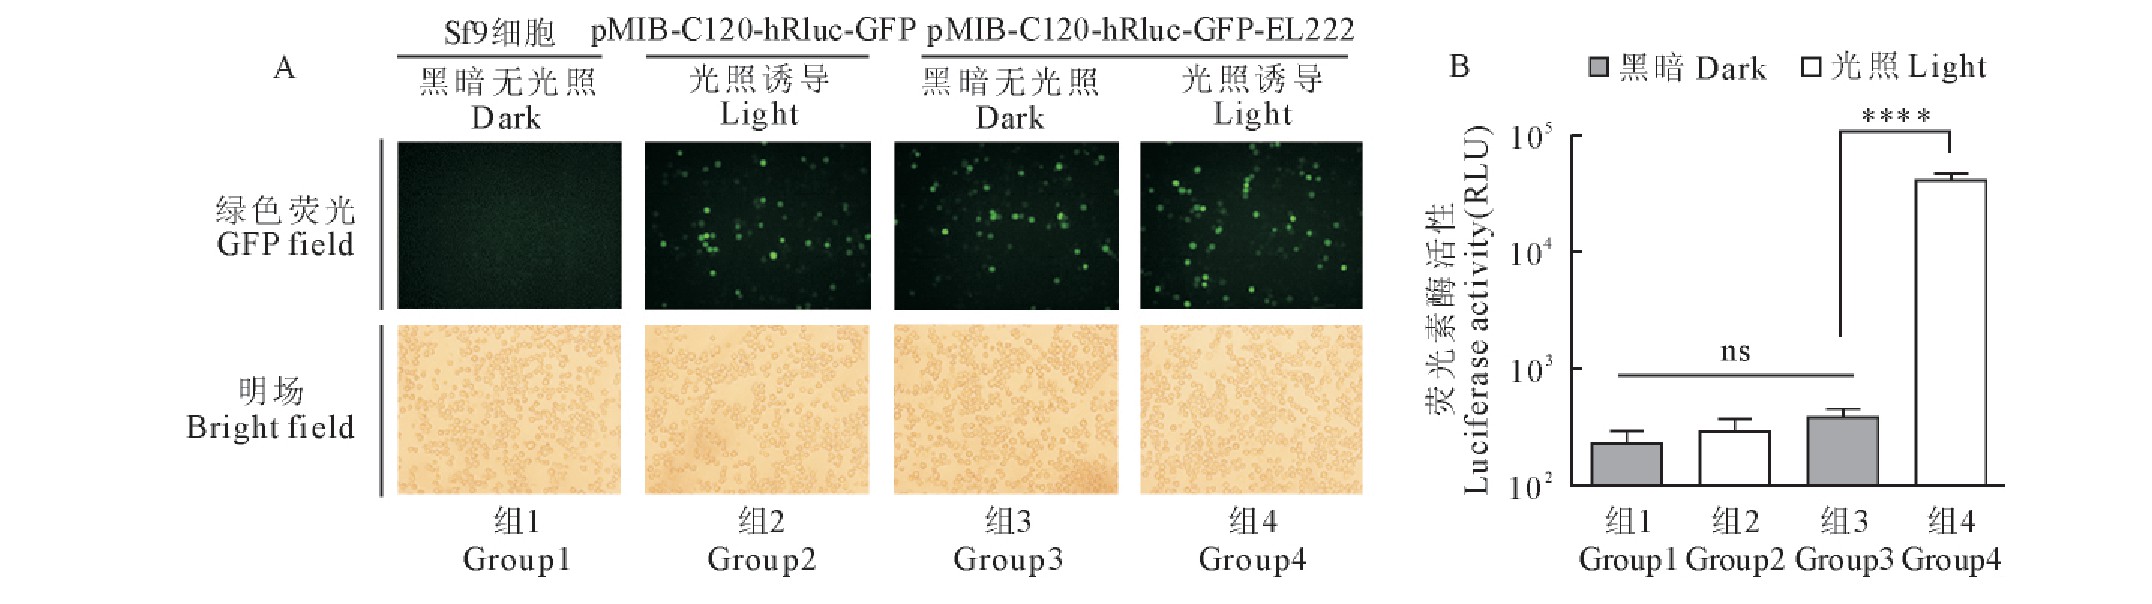 图4 含有荧光素酶hRluc报告基因的昆虫细胞光诱导表达载体测试